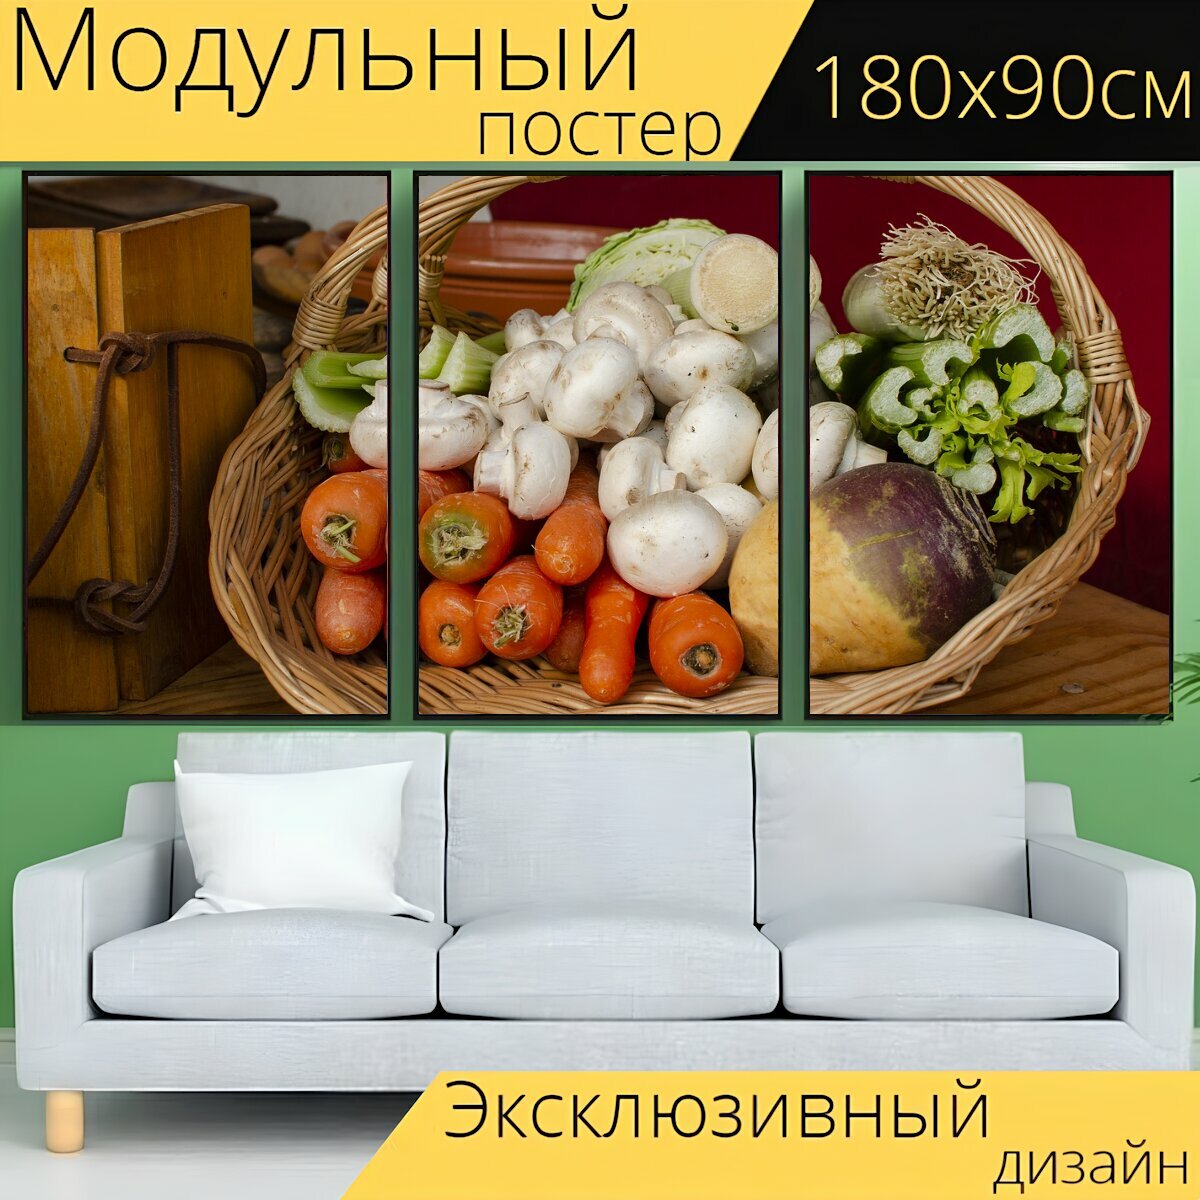 Модульный постер "Овощ, овощи, корзина" 180 x 90 см. для интерьера